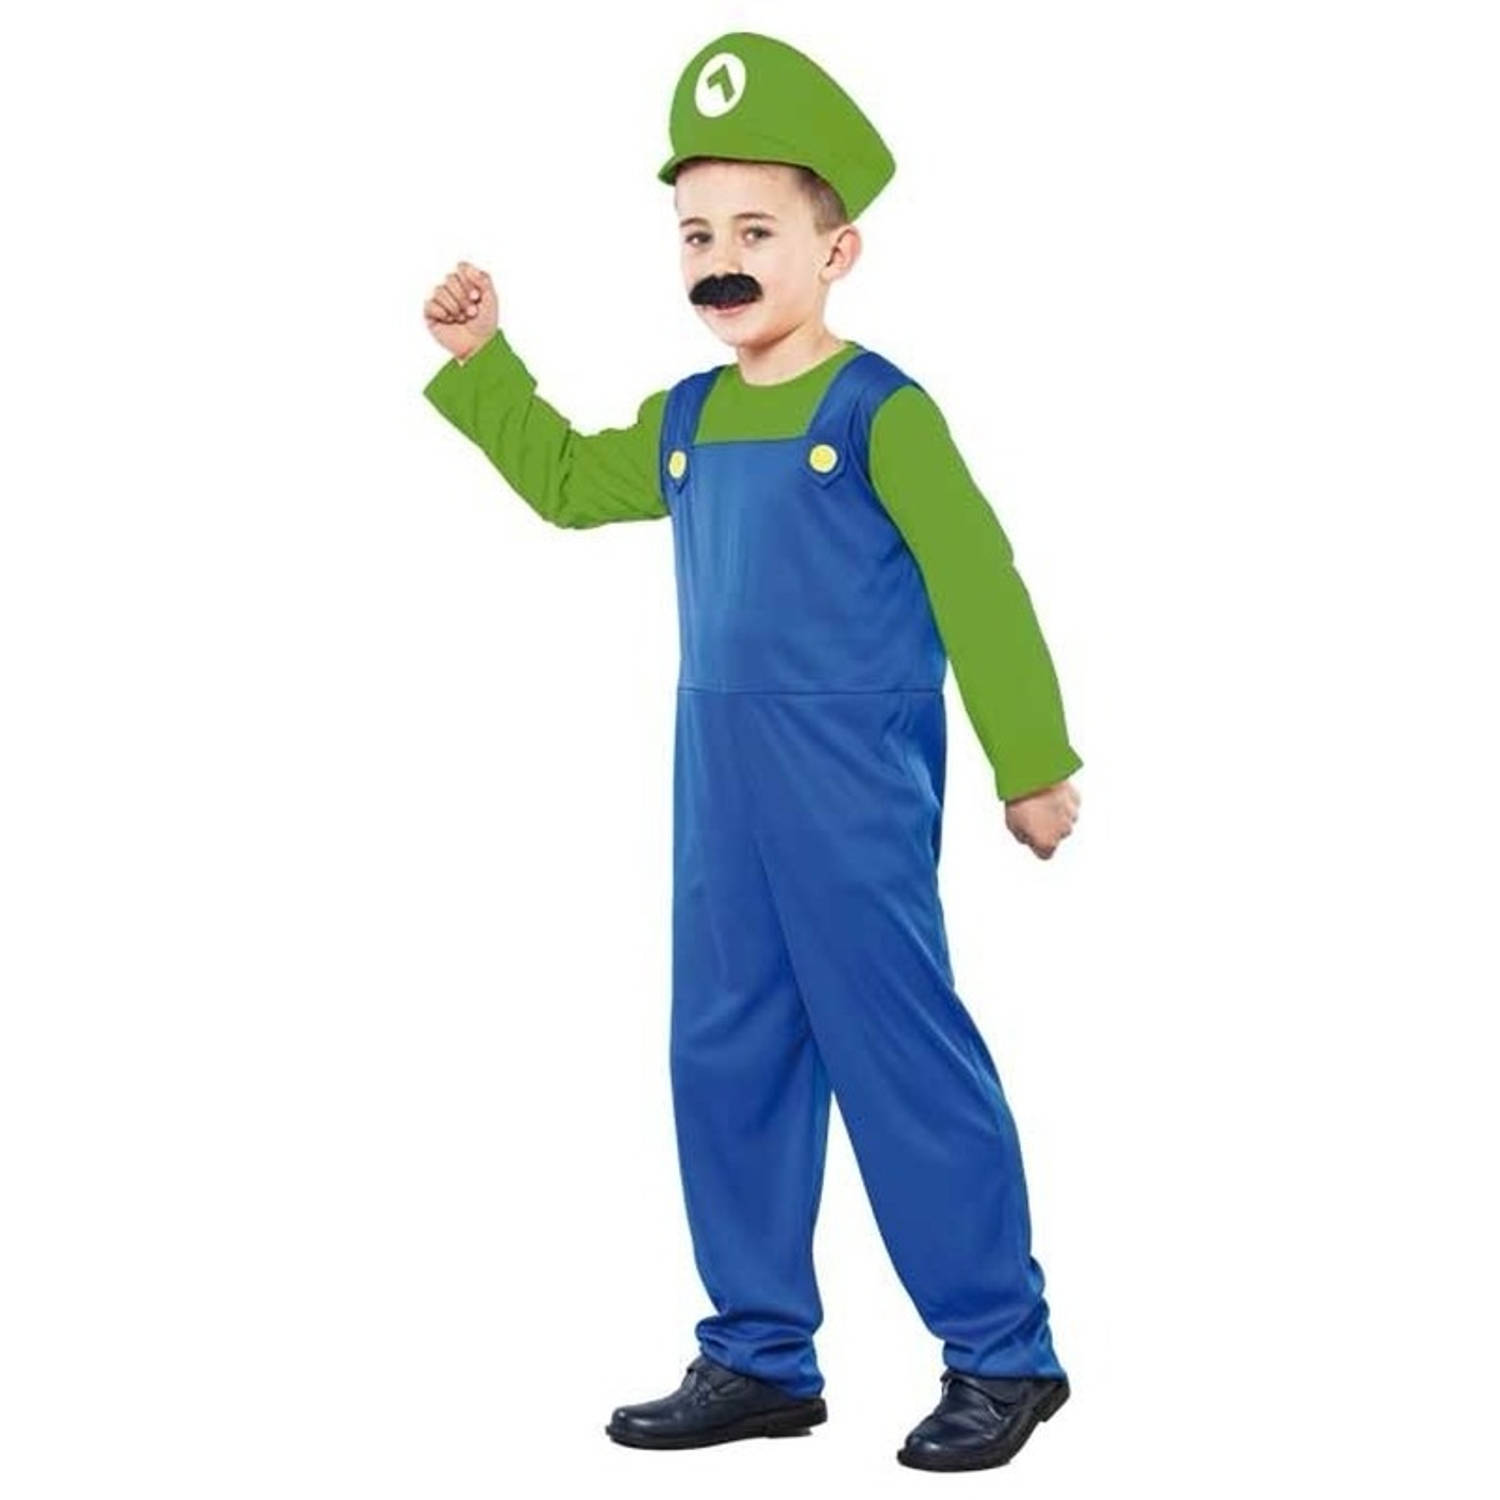 Voordelig groen loodgieters kostuum voor jongens - T-01 (S)